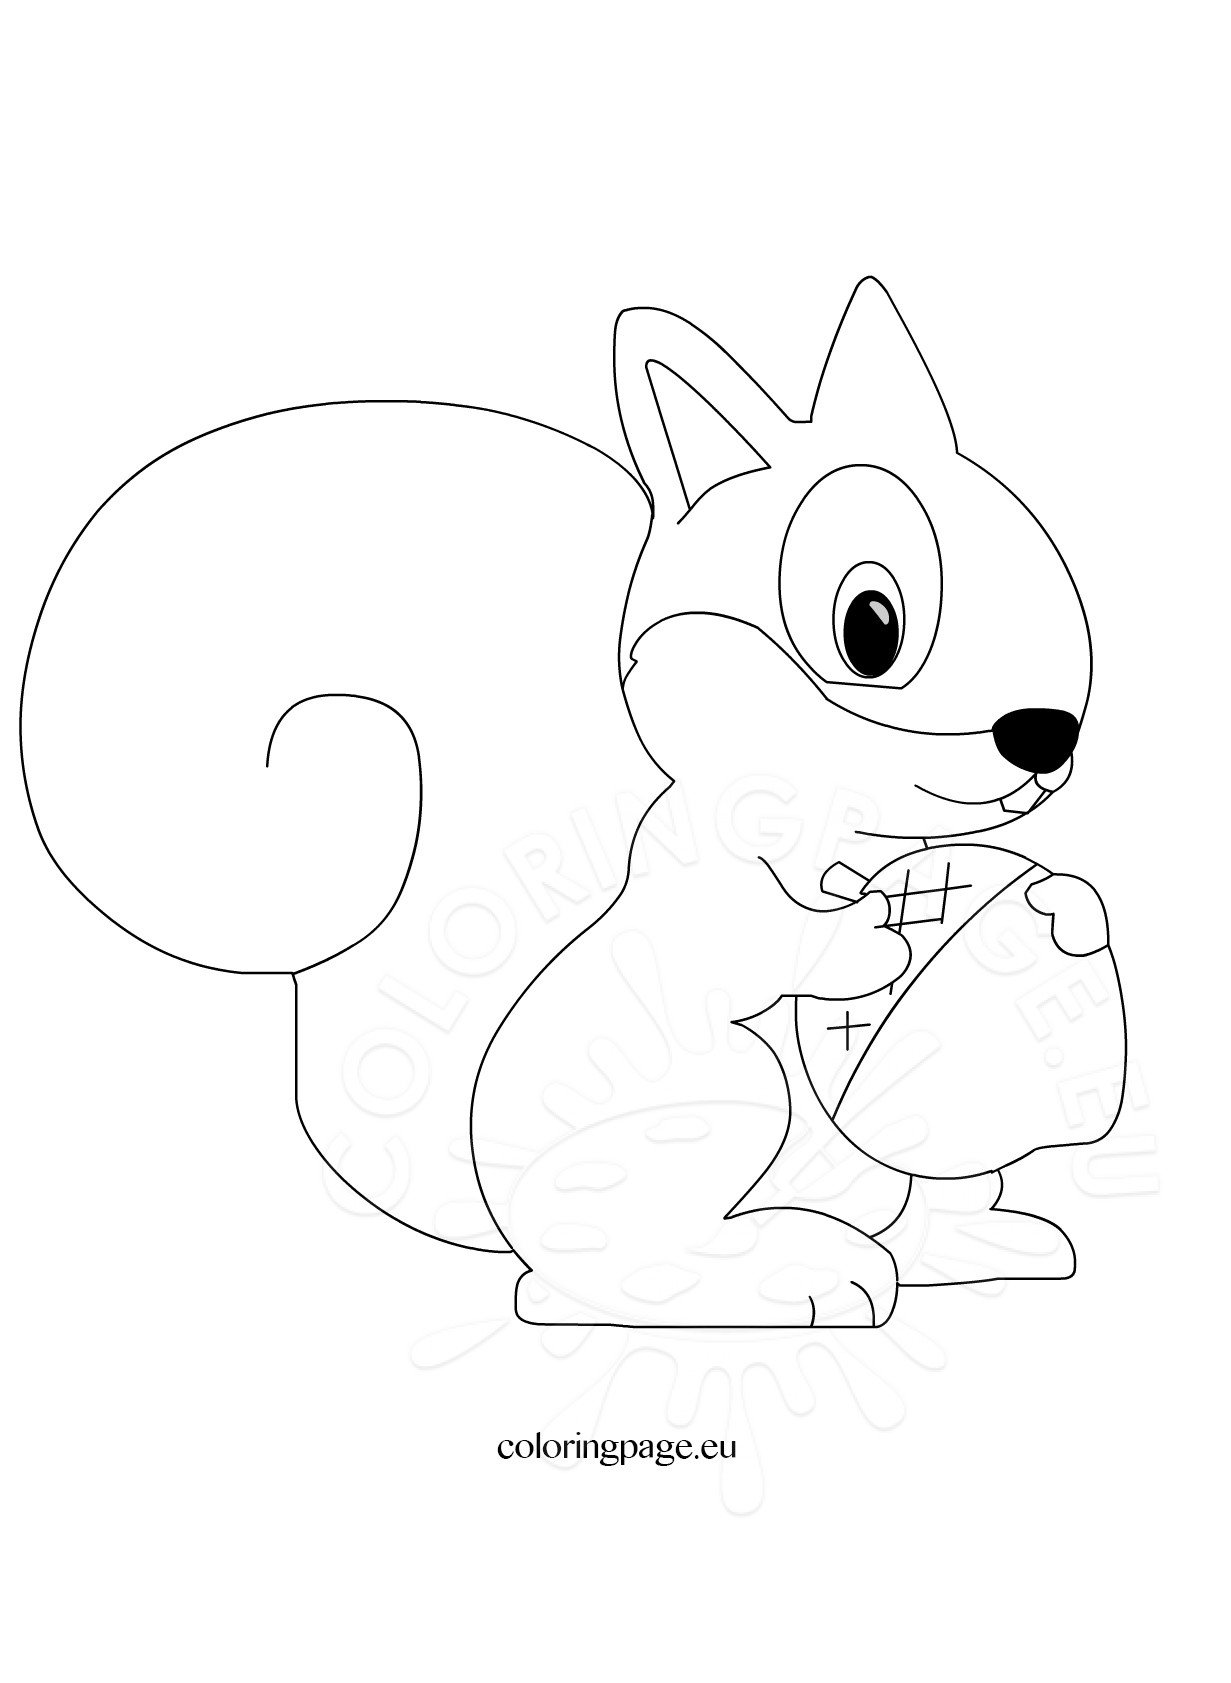 Cute Squirrel cartoon – Coloring Page